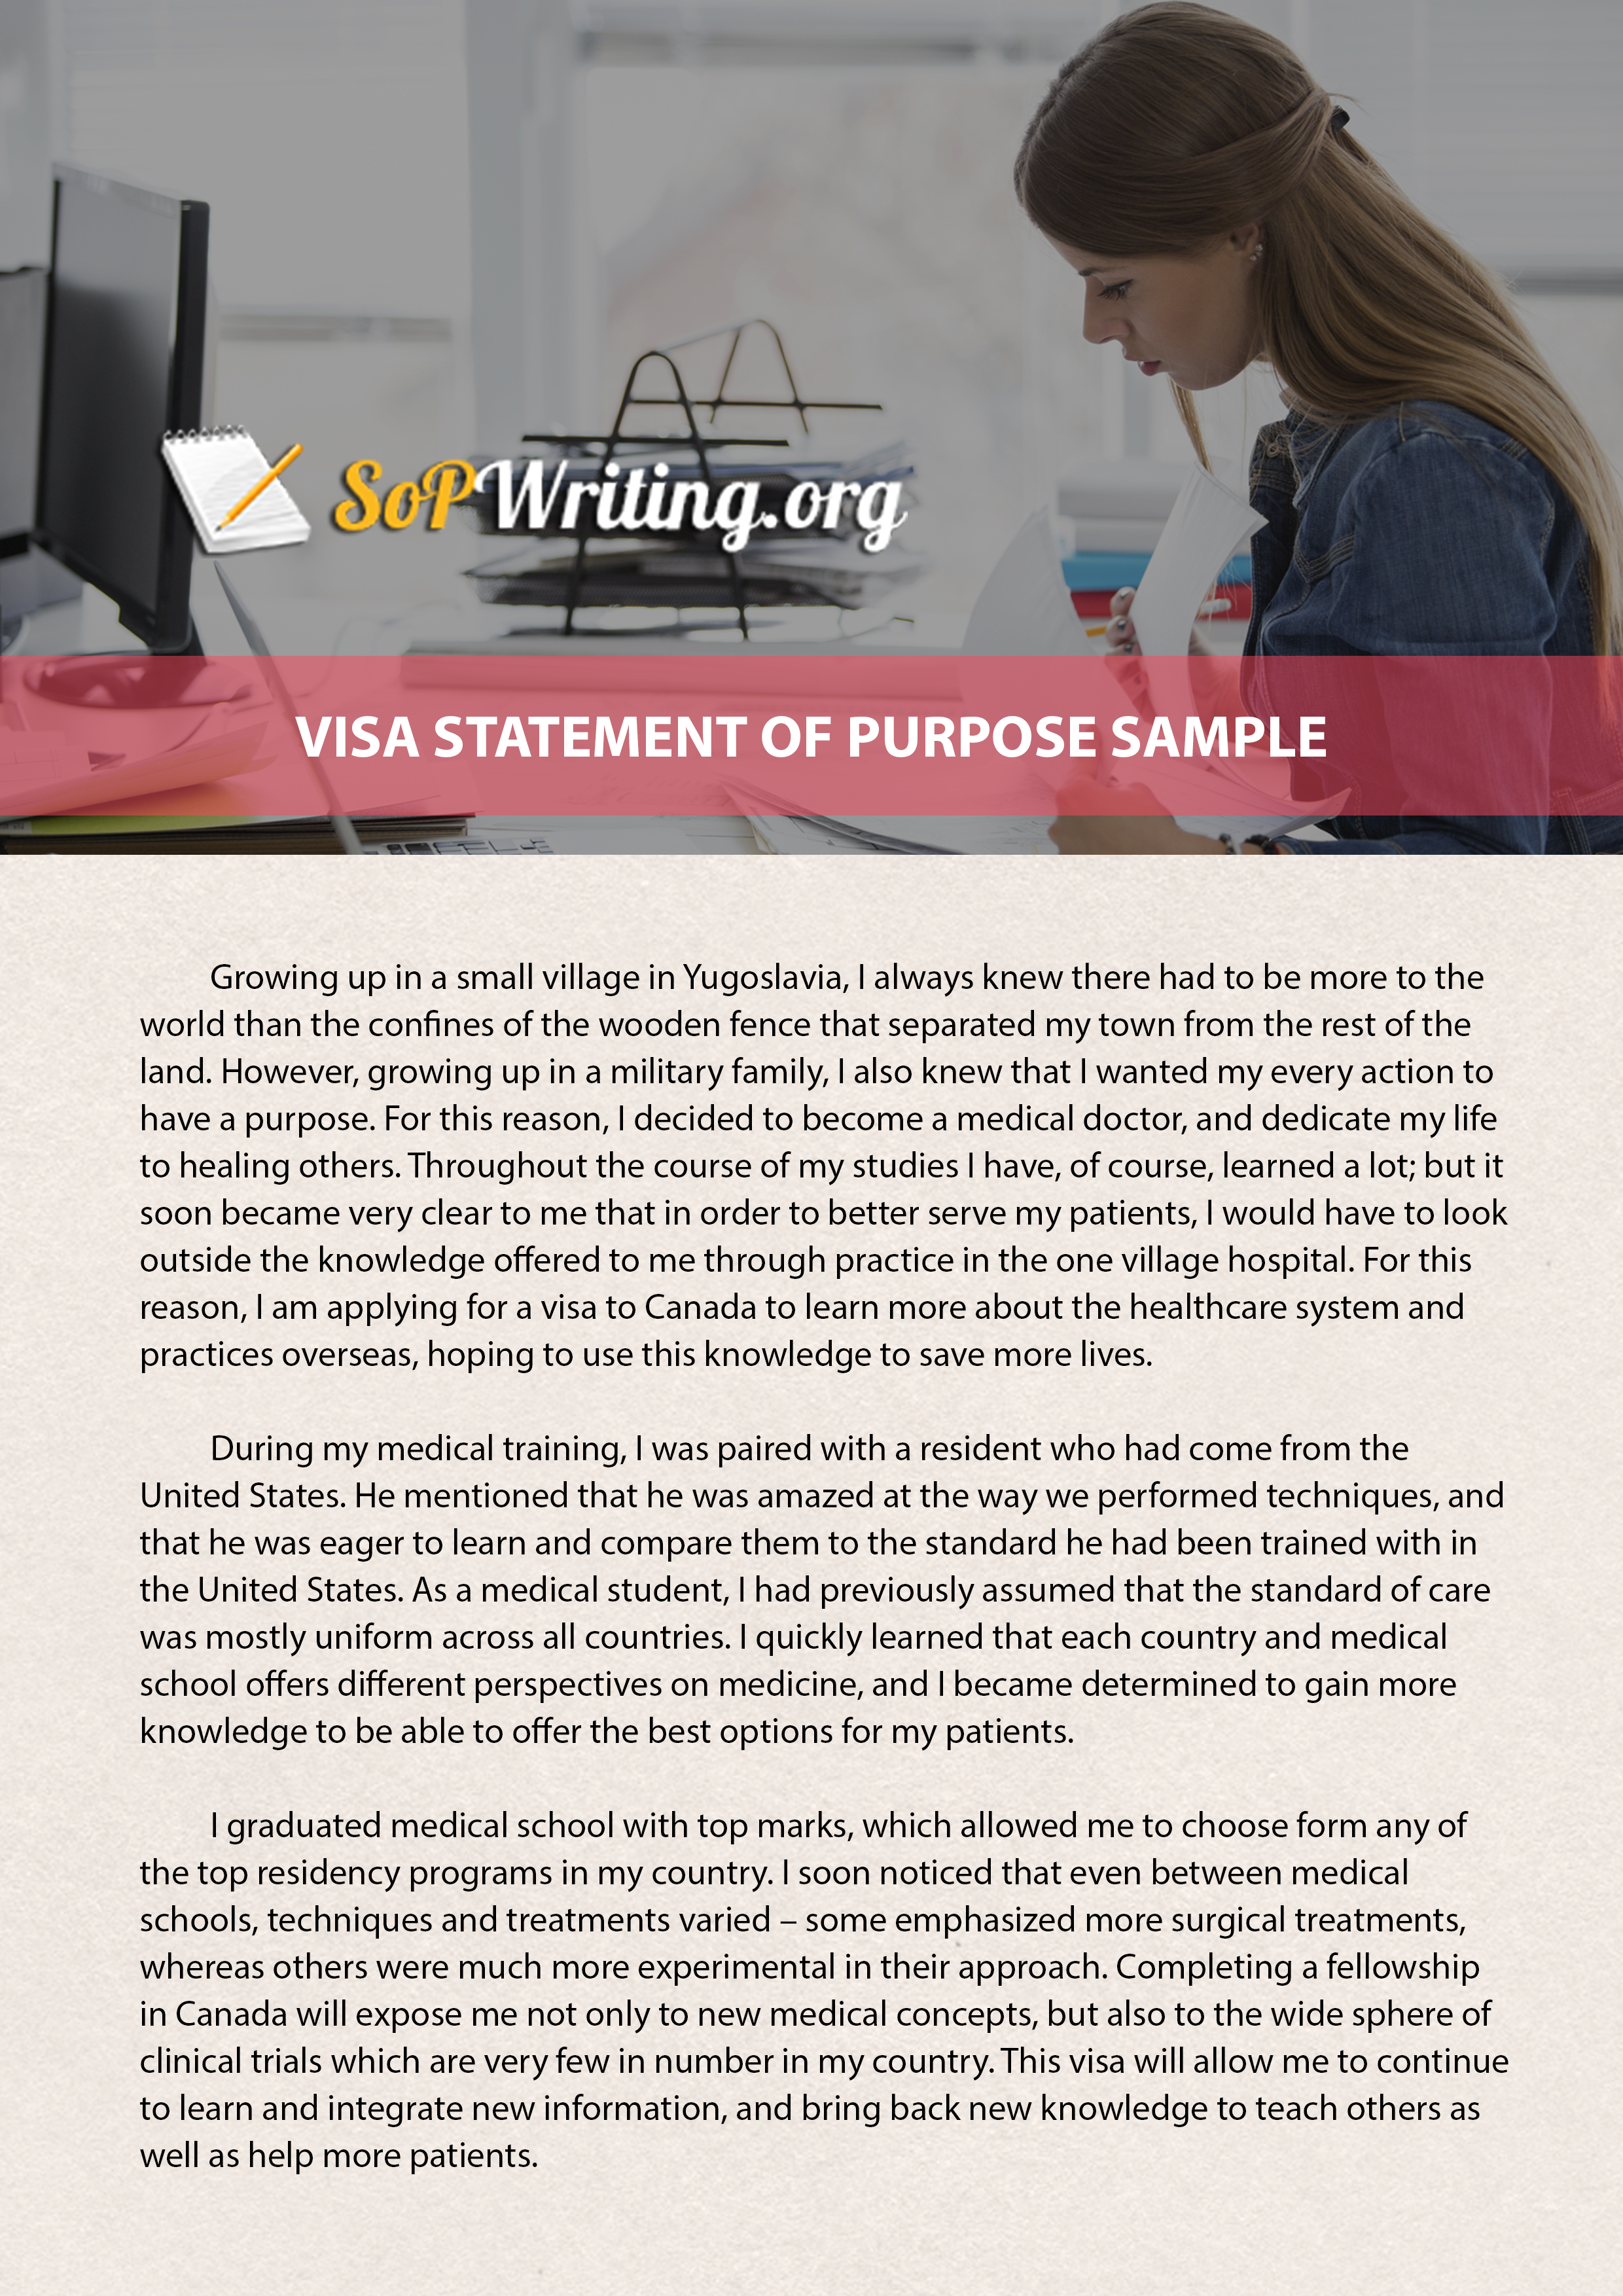 Visa Statement of Purpose Sample